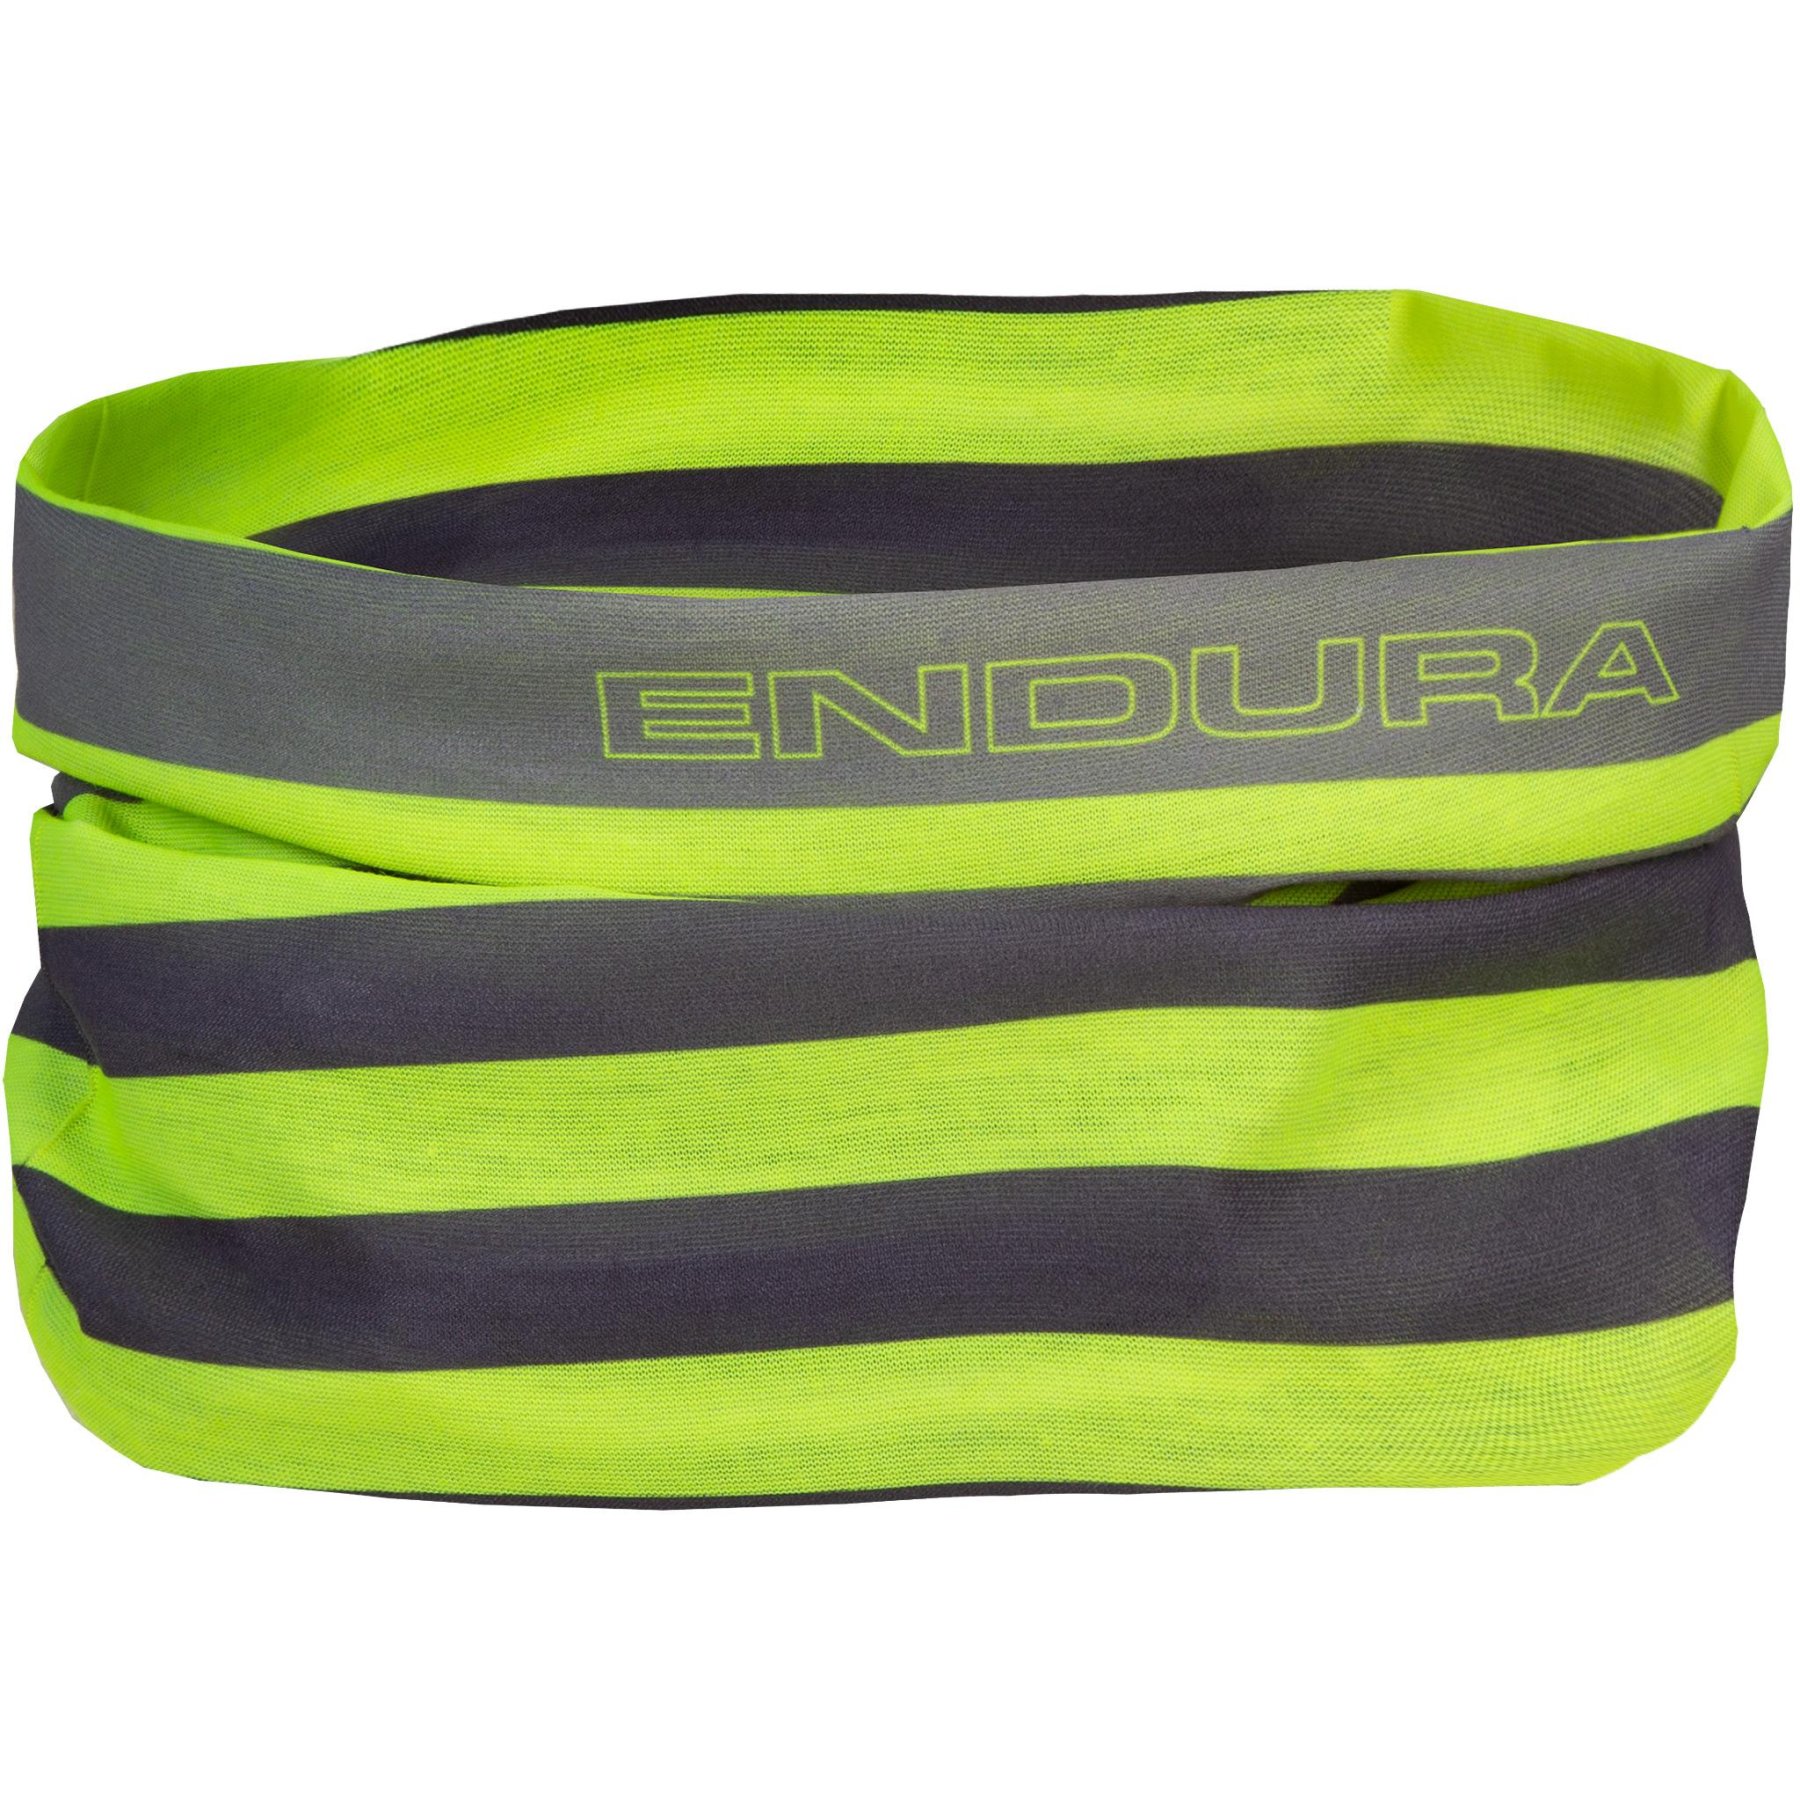 Productfoto van Endura Multifunctionele Doek - neon-yellow